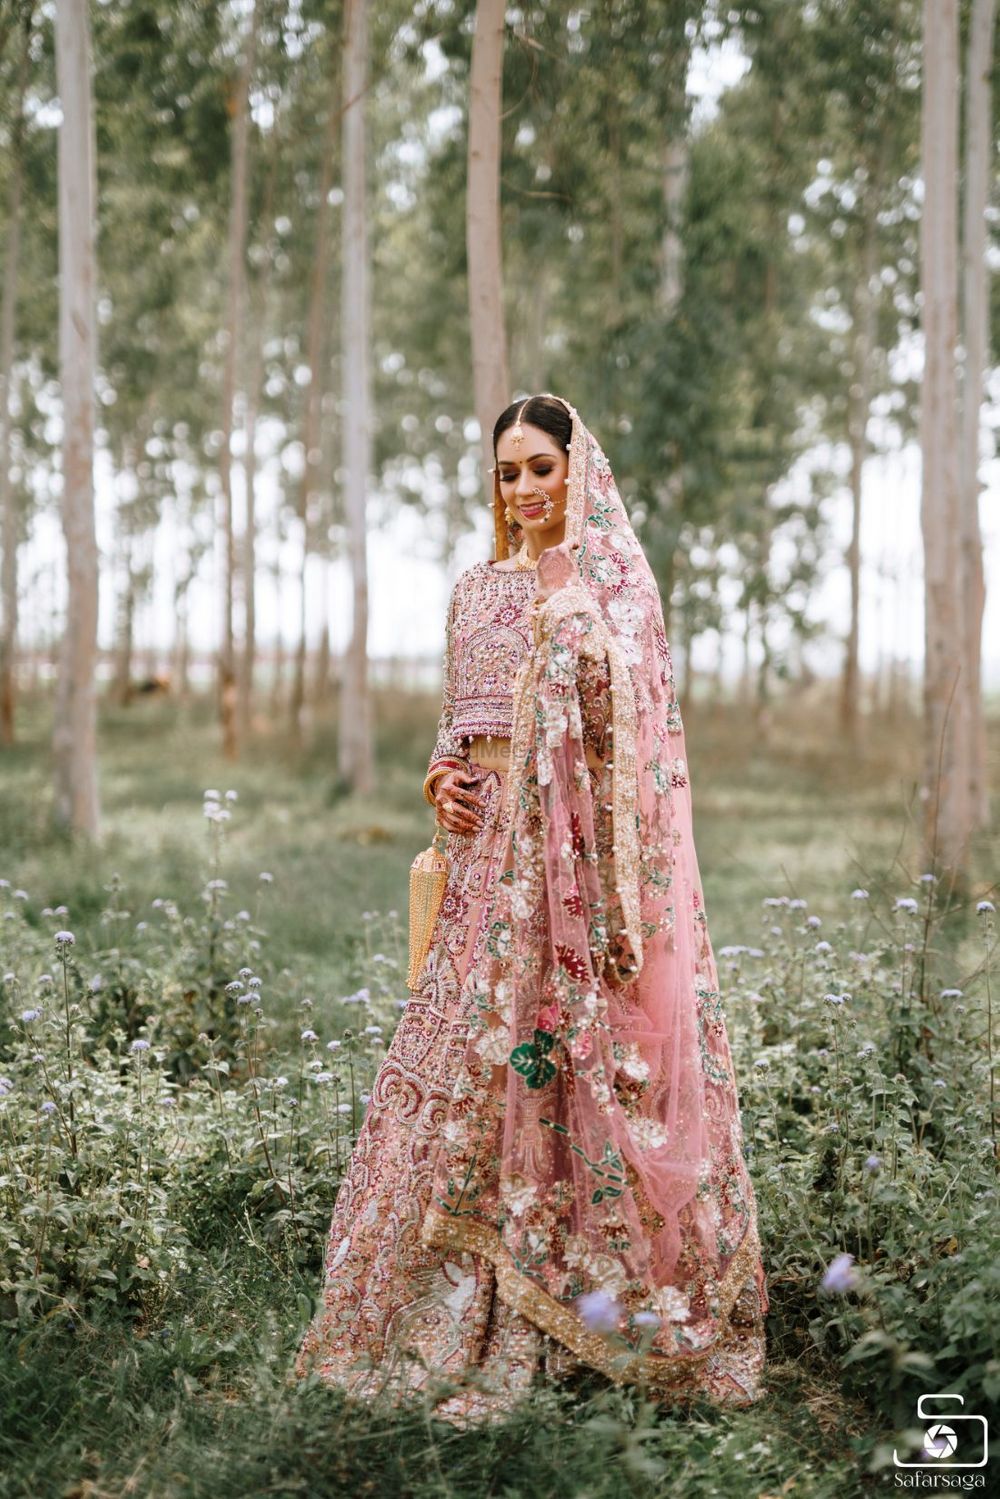 Photo of Bride wearing a fully embellished pink bridal lehenga.